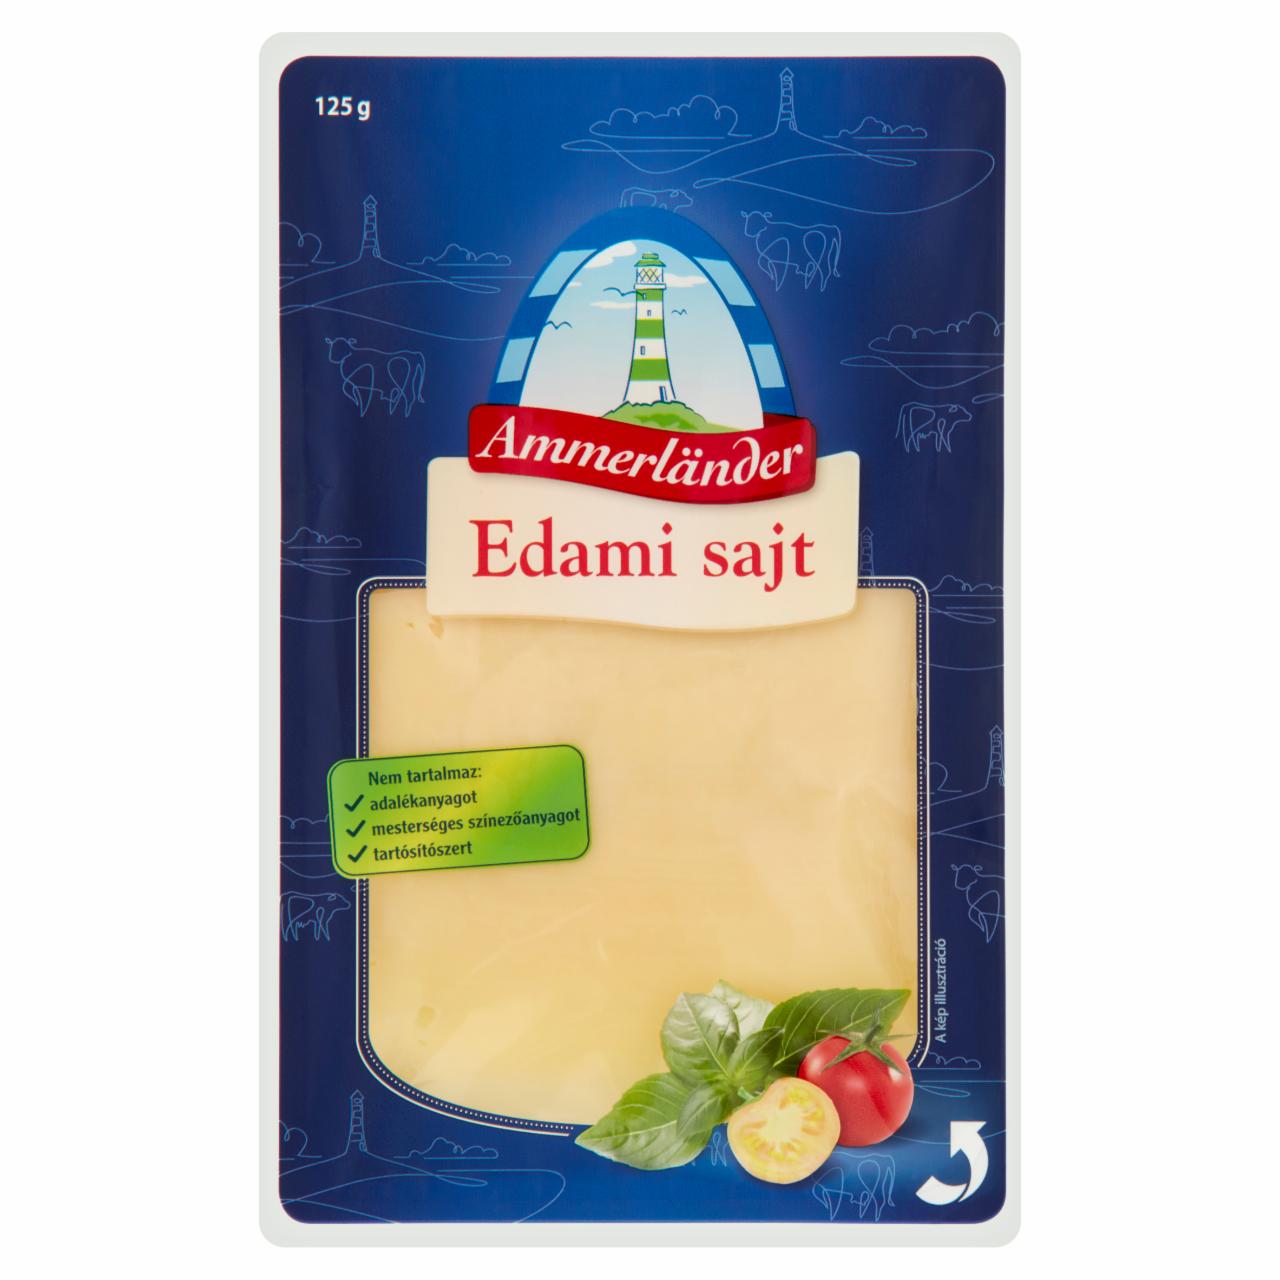 Képek - Ammerländer szeletelt edami sajt 125 g